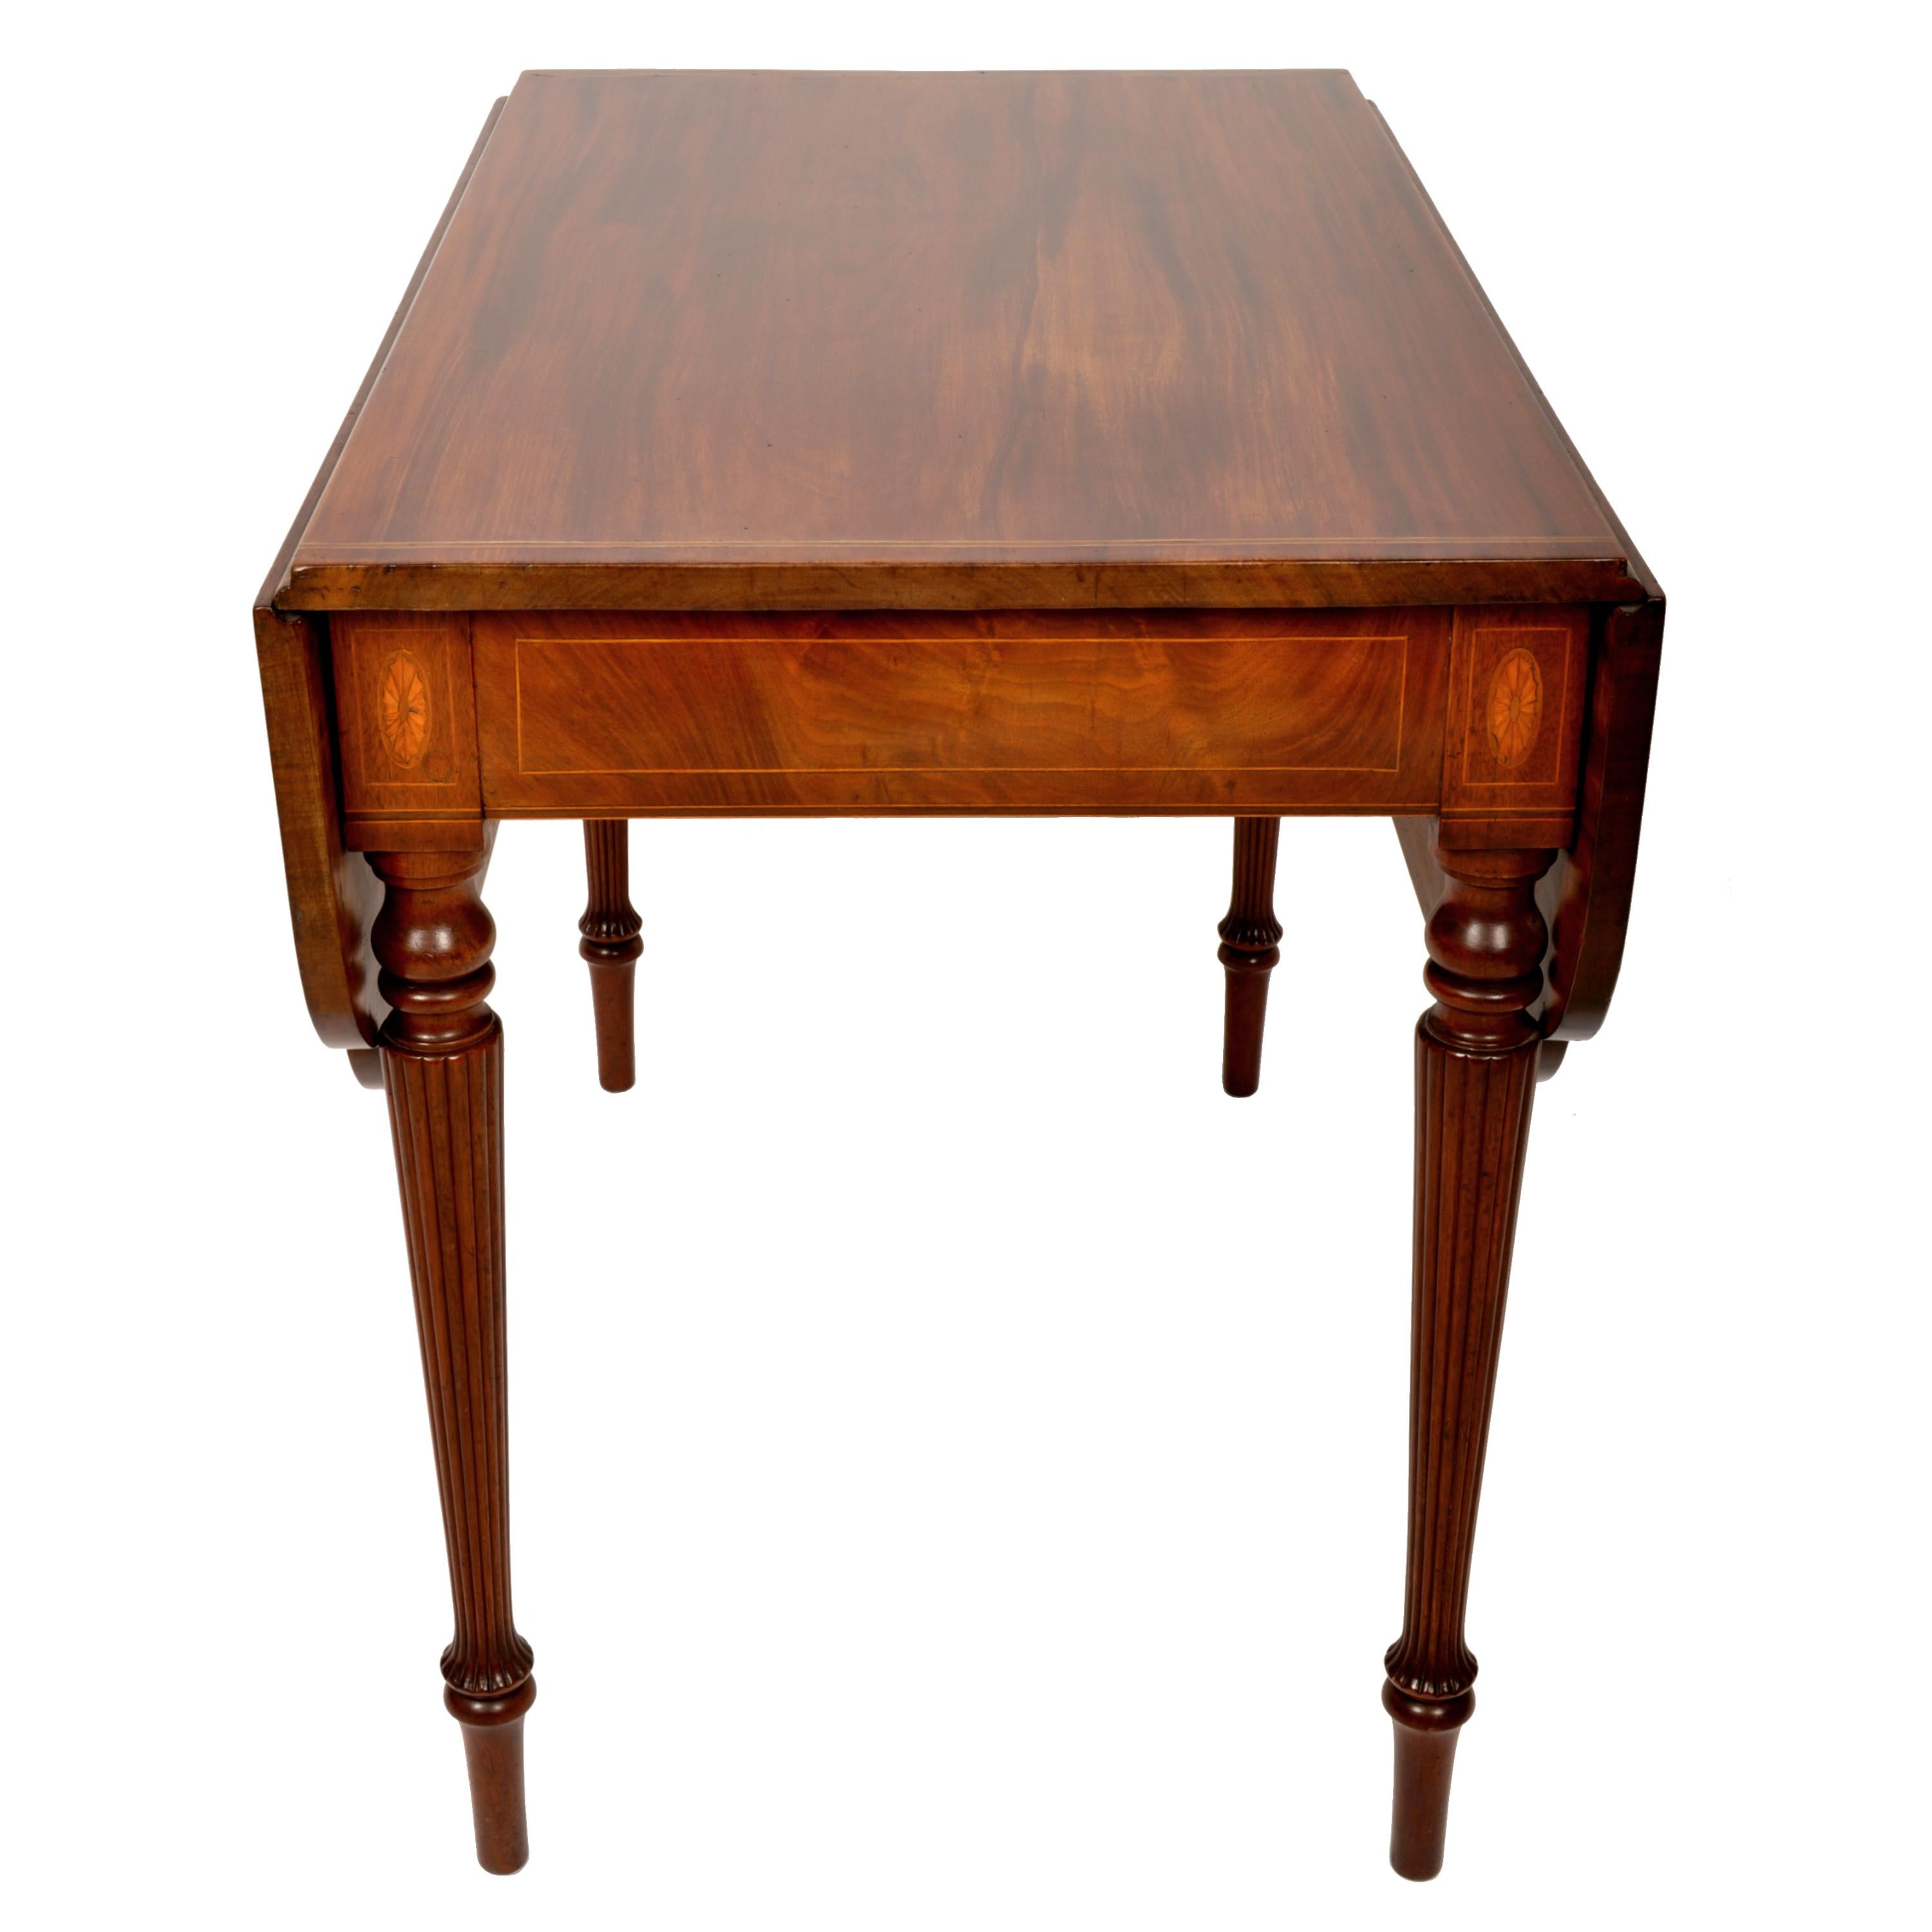 Ein sehr schöner antiker amerikanischer Sheraton-Mahagoni-Tisch aus der Bundeszeit, New York, um 1790. 
Dieser sehr elegante Tisch aus der Bundeszeit ist aus feinstem gemasertem kubanischem Mahagoni gefertigt. Der Tisch hat zwei mit Satinholz